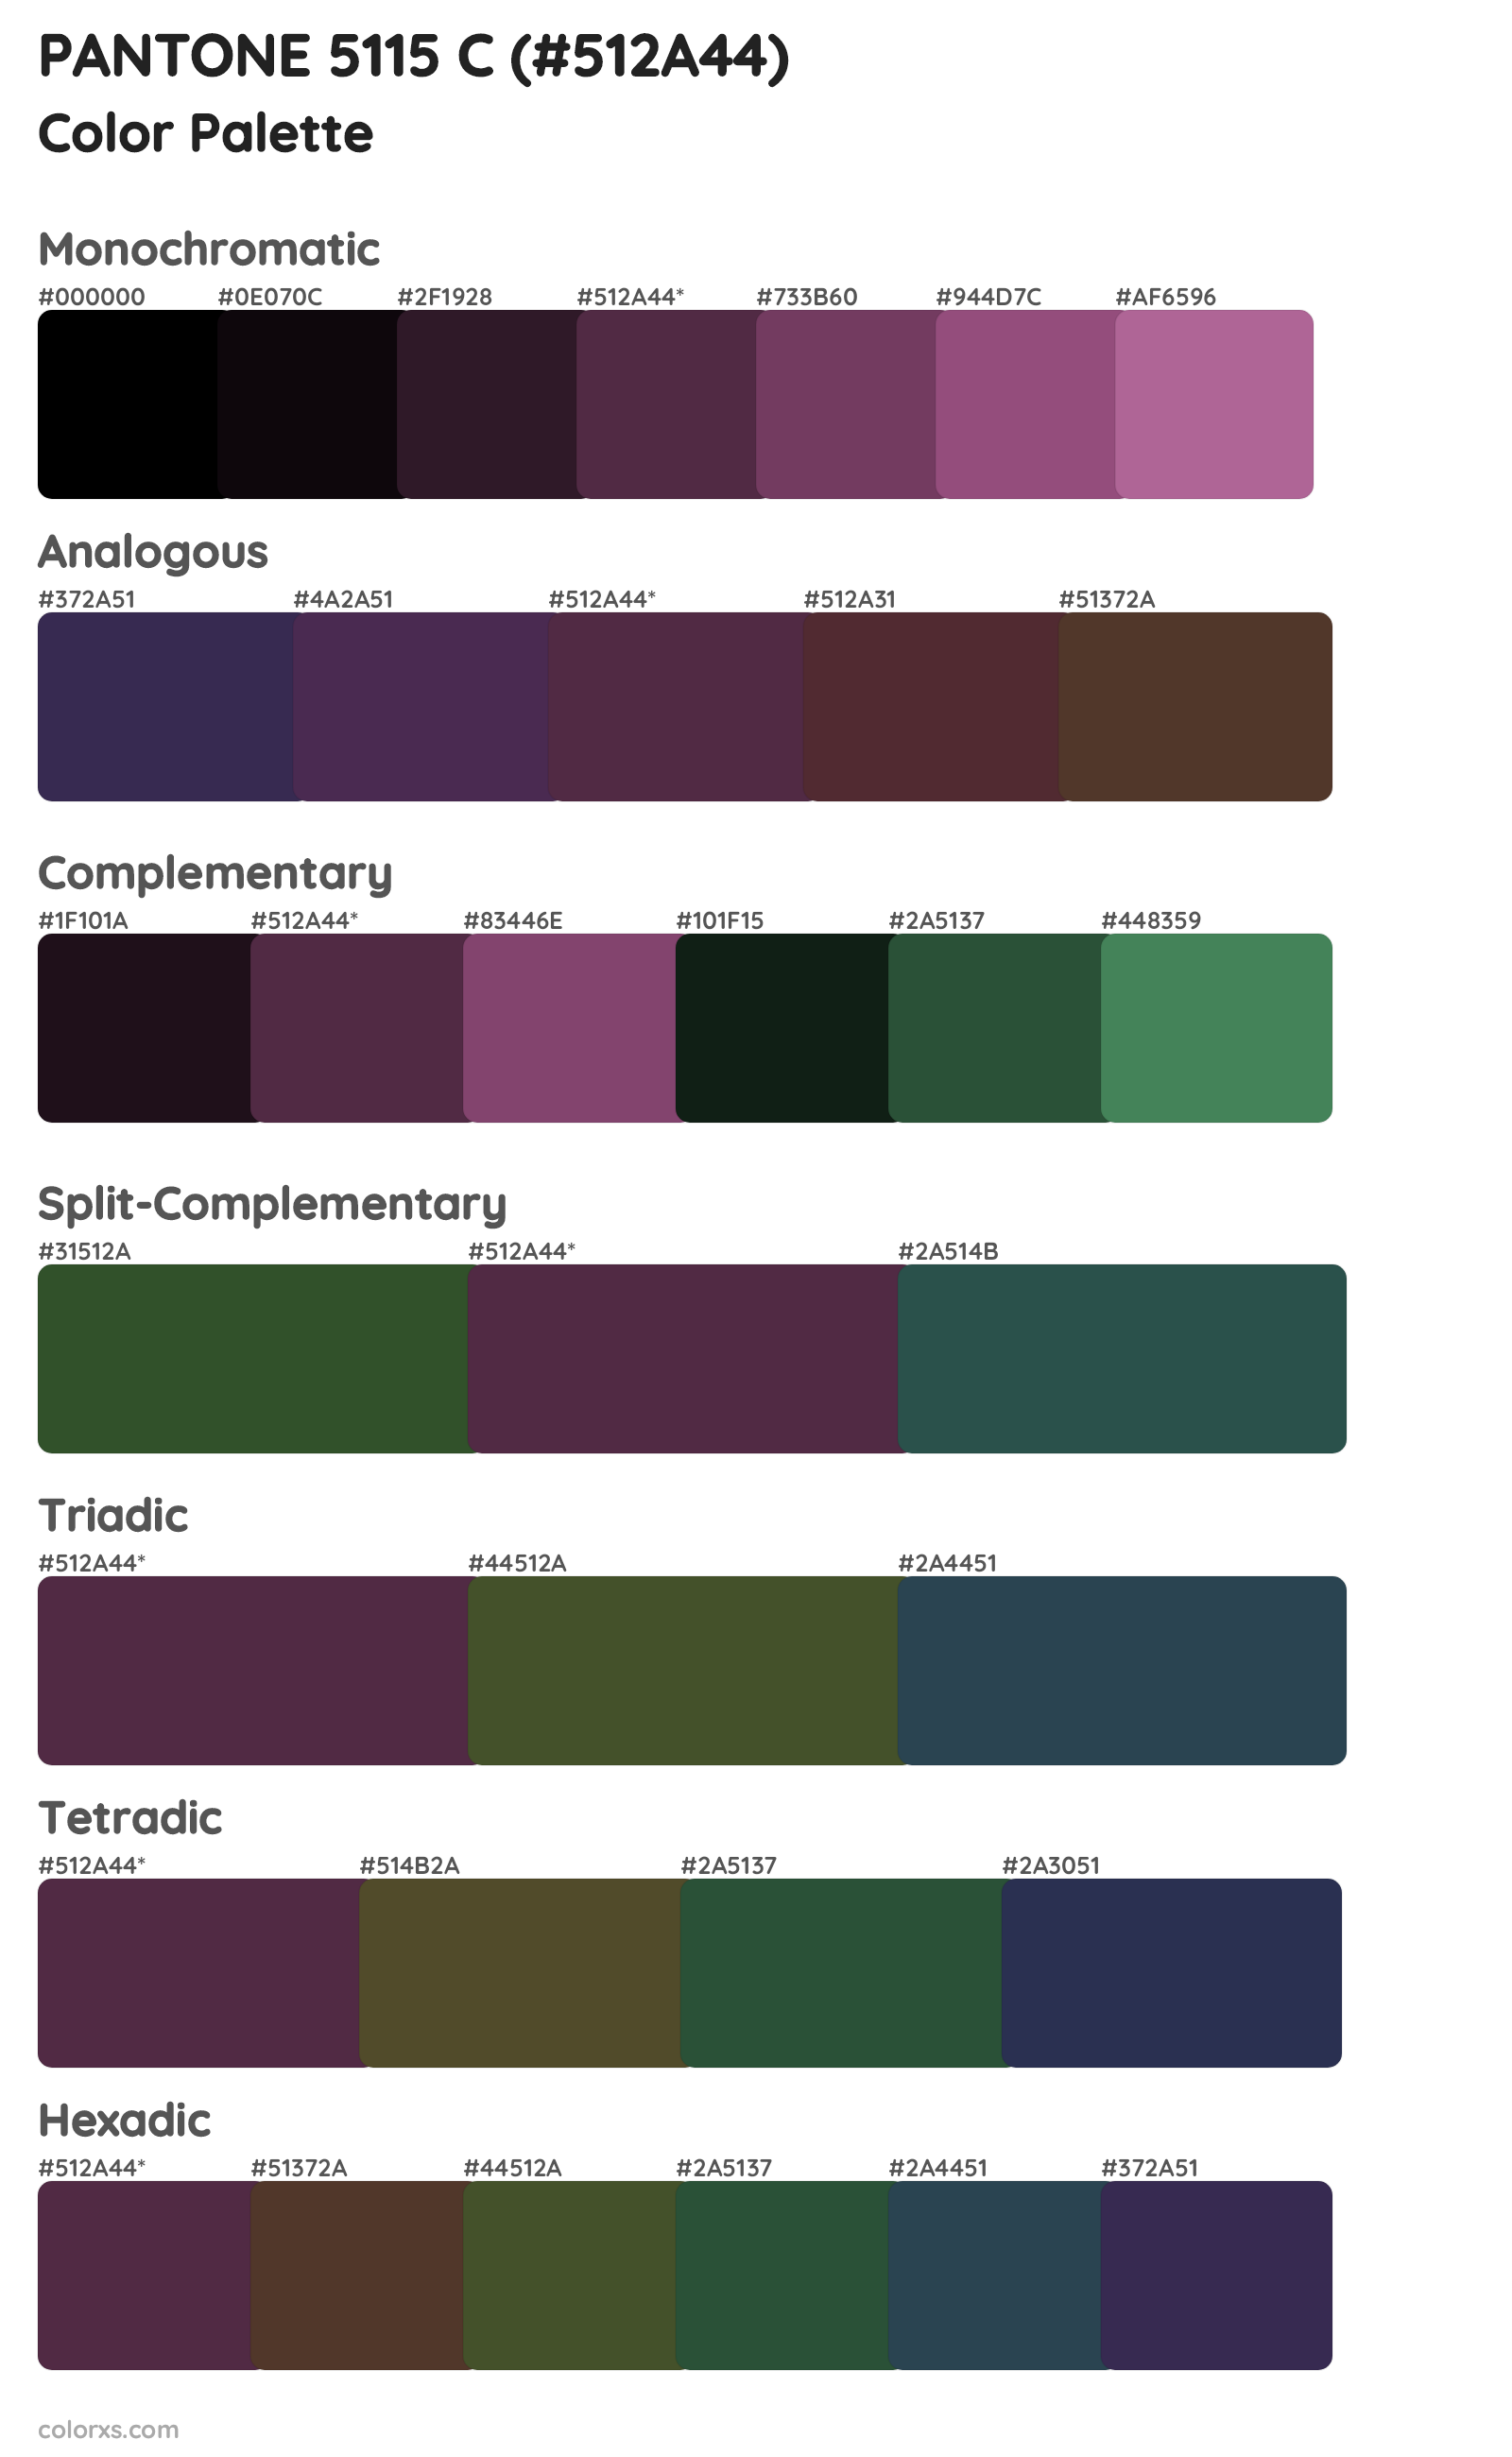 PANTONE 5115 C Color Scheme Palettes